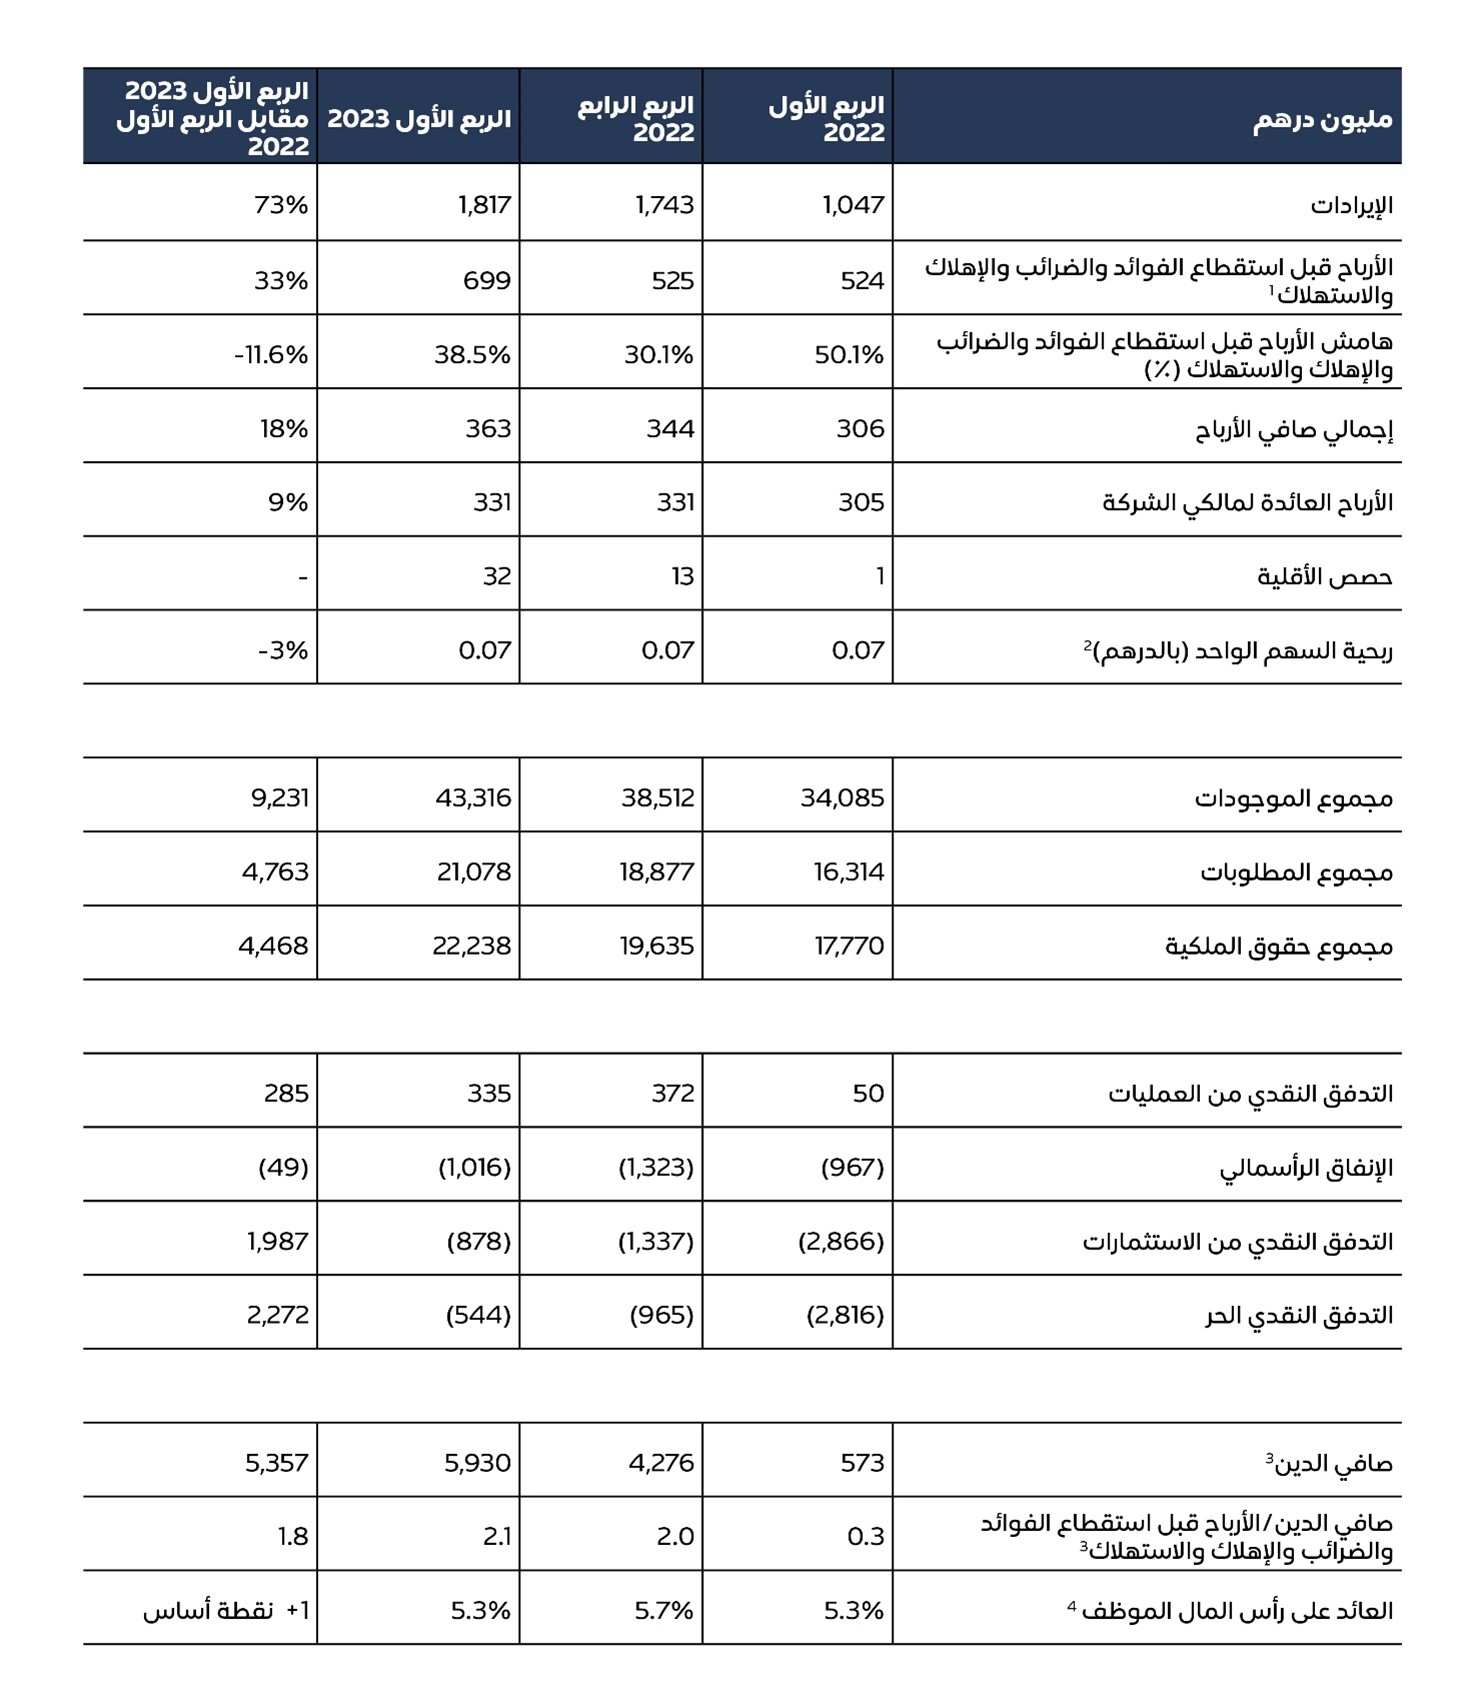 مجموعة موانئ أبوظبي - ملخص النتائج المالية الموحدة